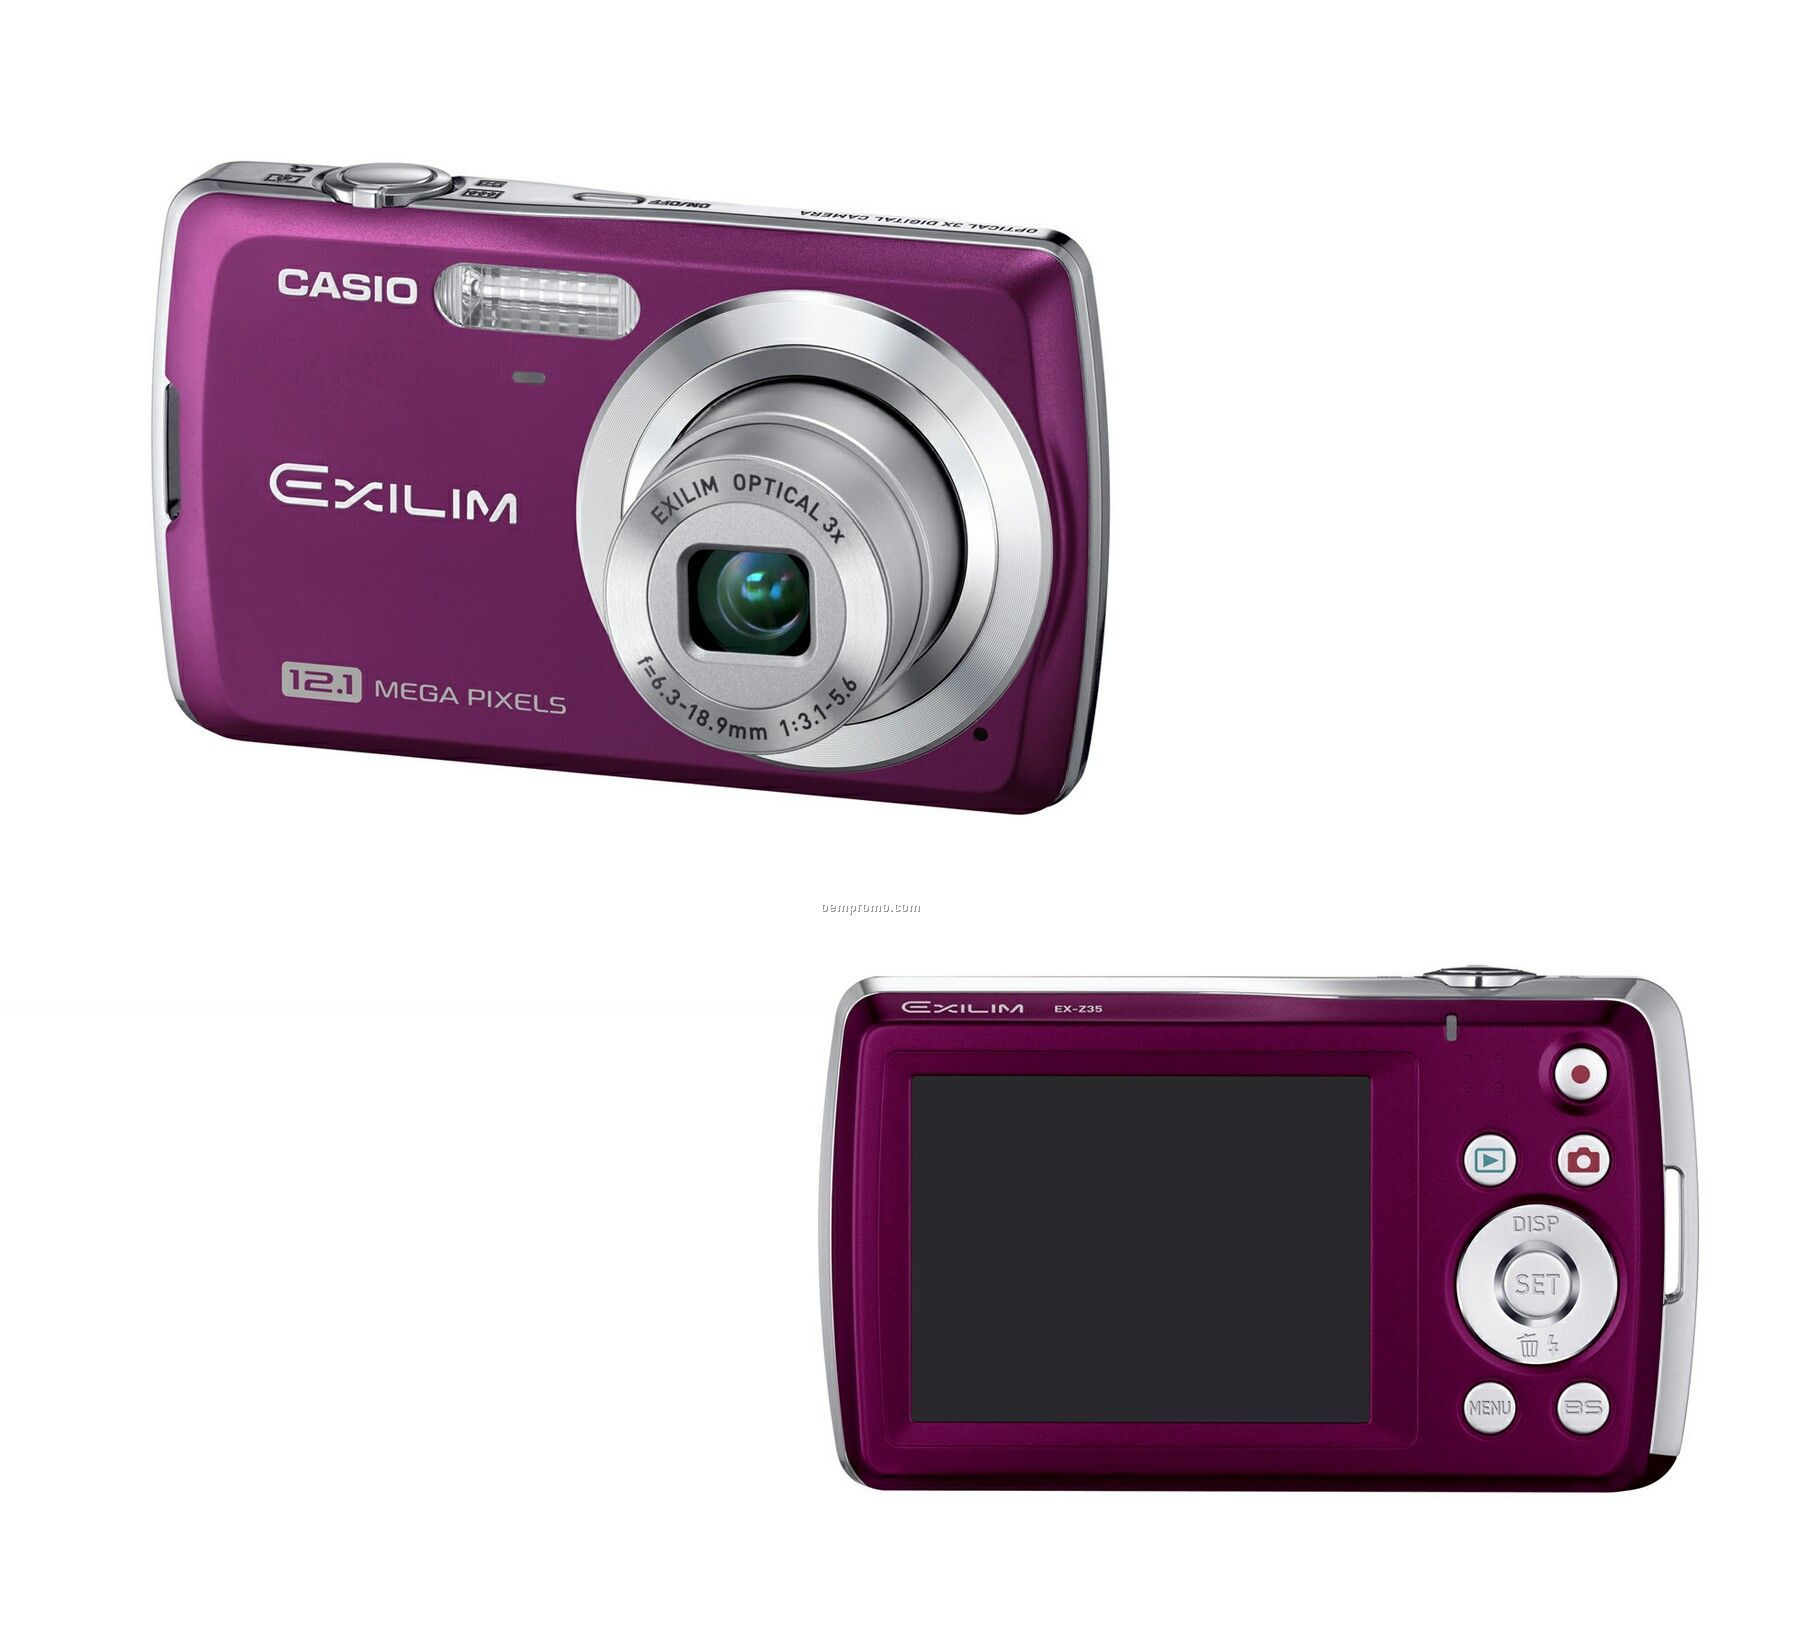 Casio Exilim 12.1 Megapixel Digital Camera